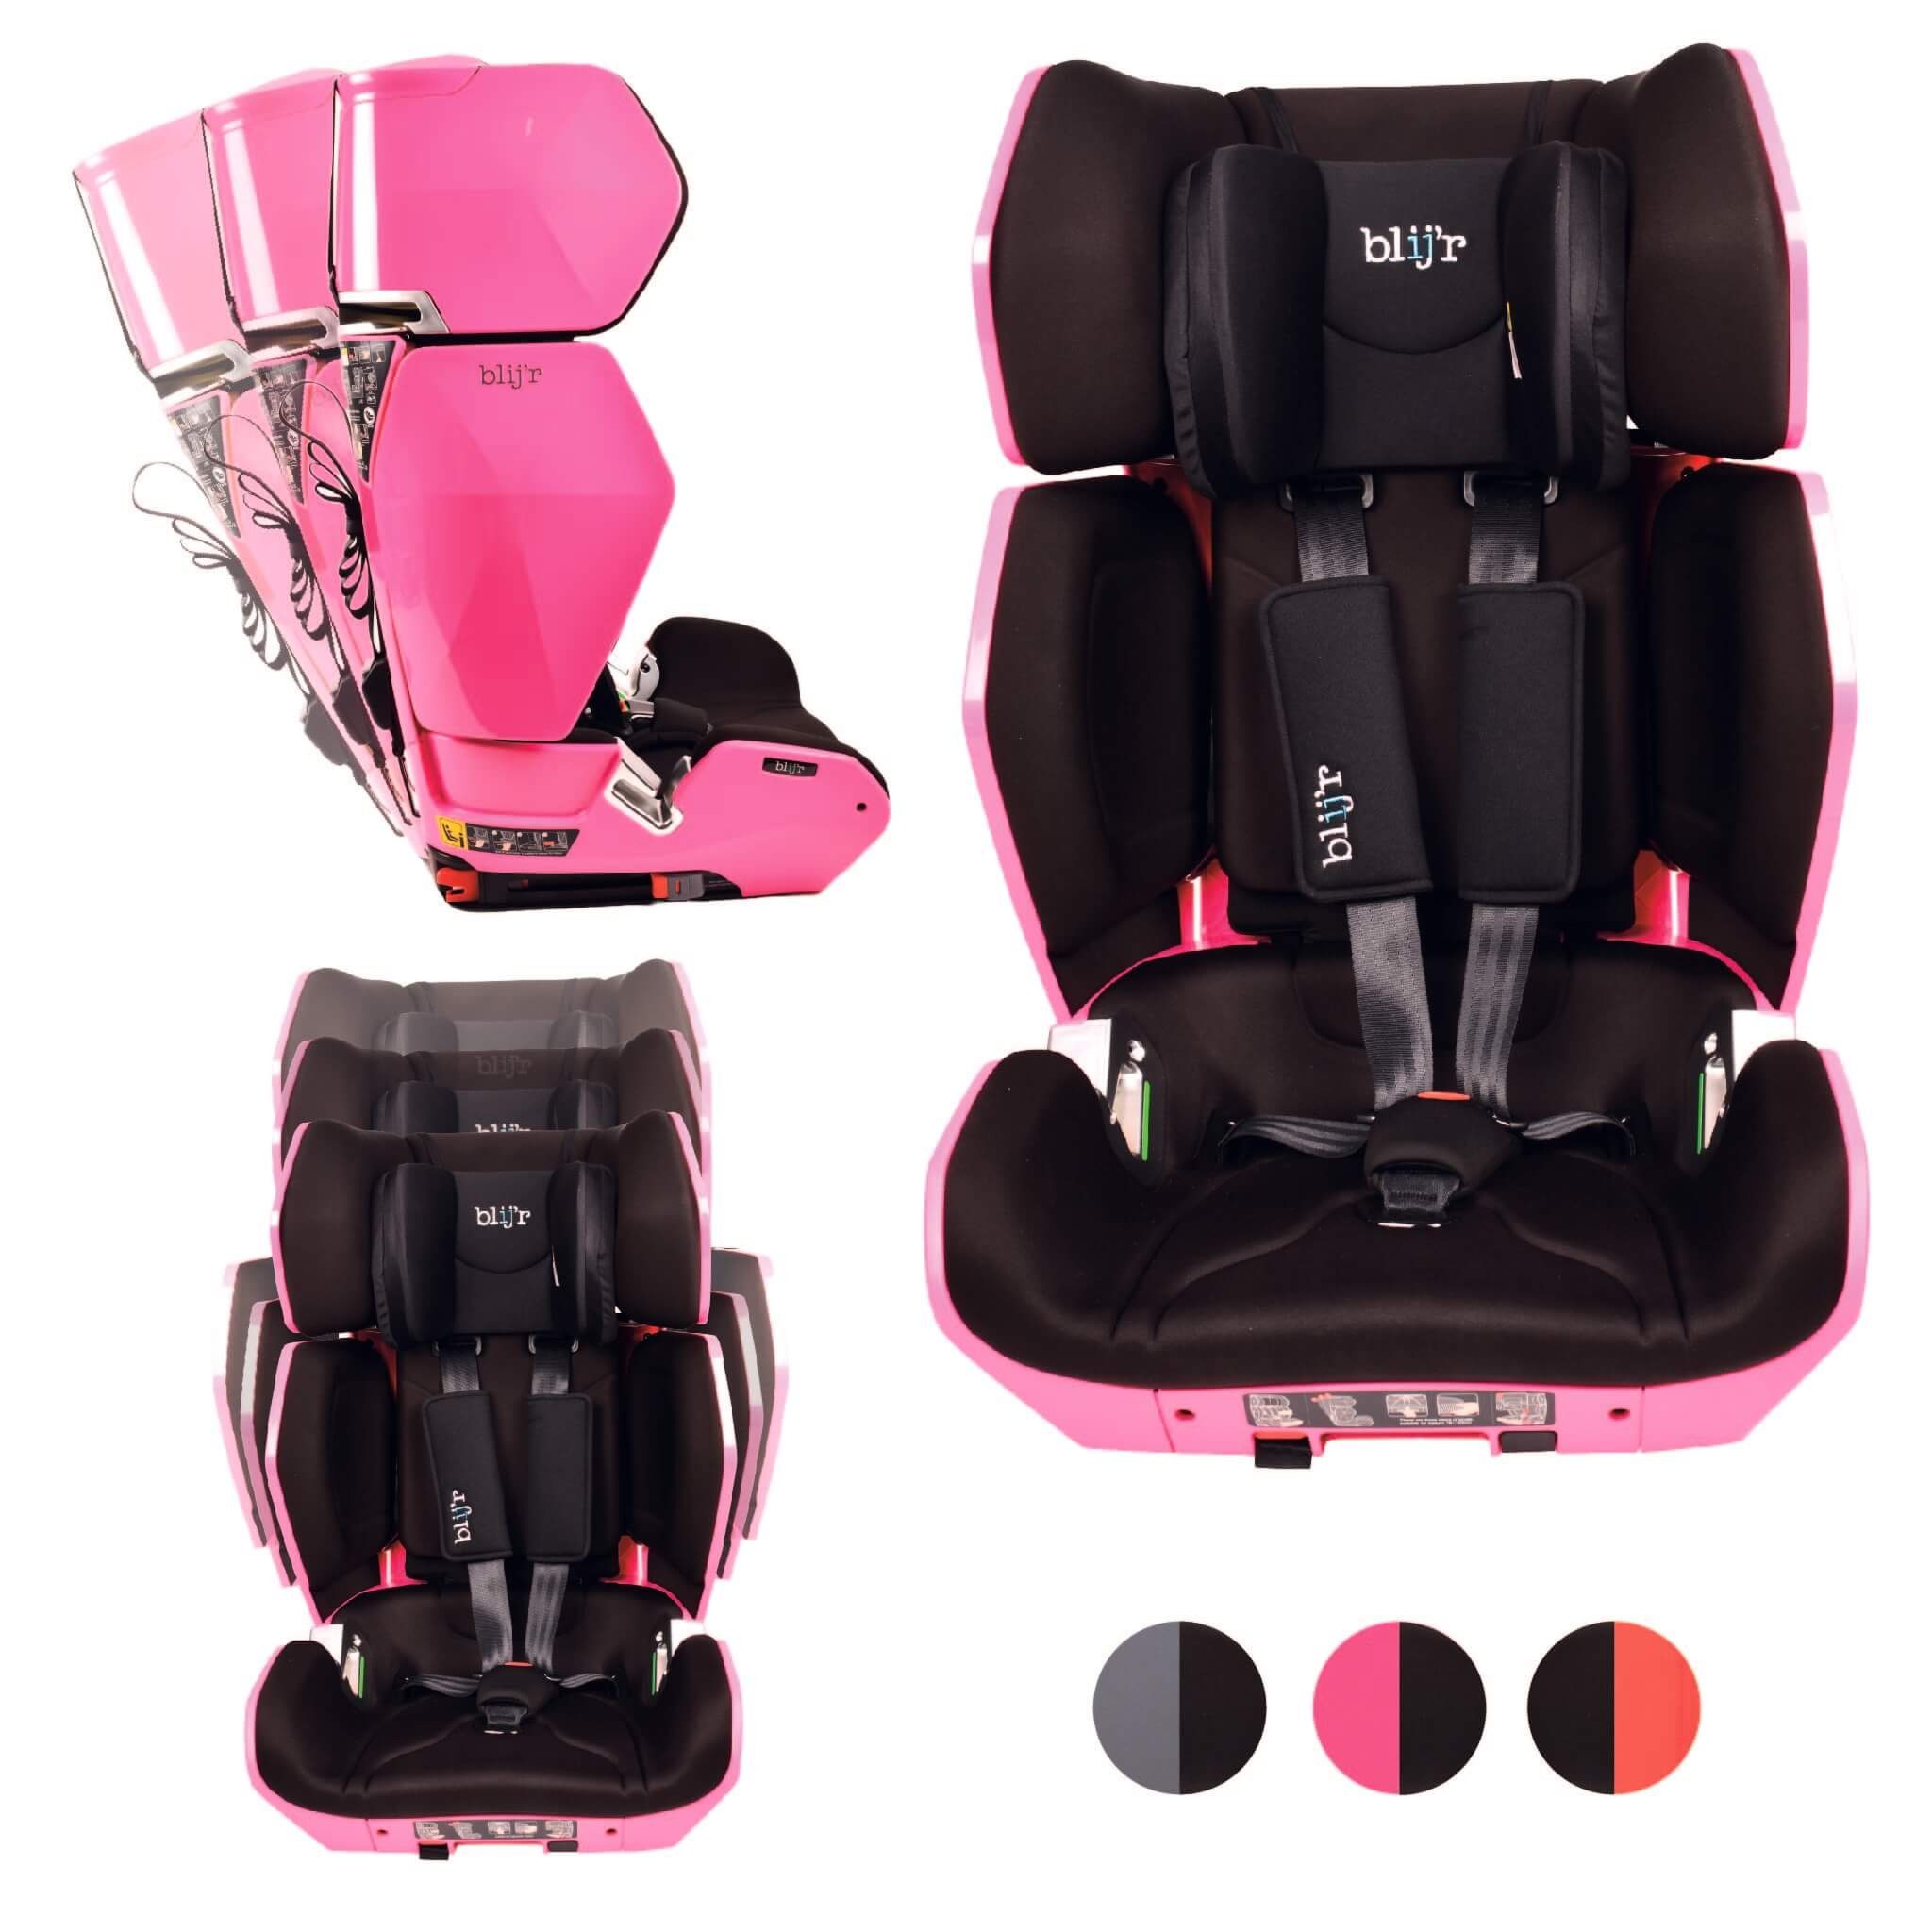 Blij´r Autokindersitz Uniek Autositz Kindersitz für Kinder ab 3,5 bis 12 Jahren, ab: 3, 5Jahre, bis: 12 Jahre, ab: 15,00 kg, bis: 36,00 kg, mitwachsender Autositz, abwaschbare Polsterung pink